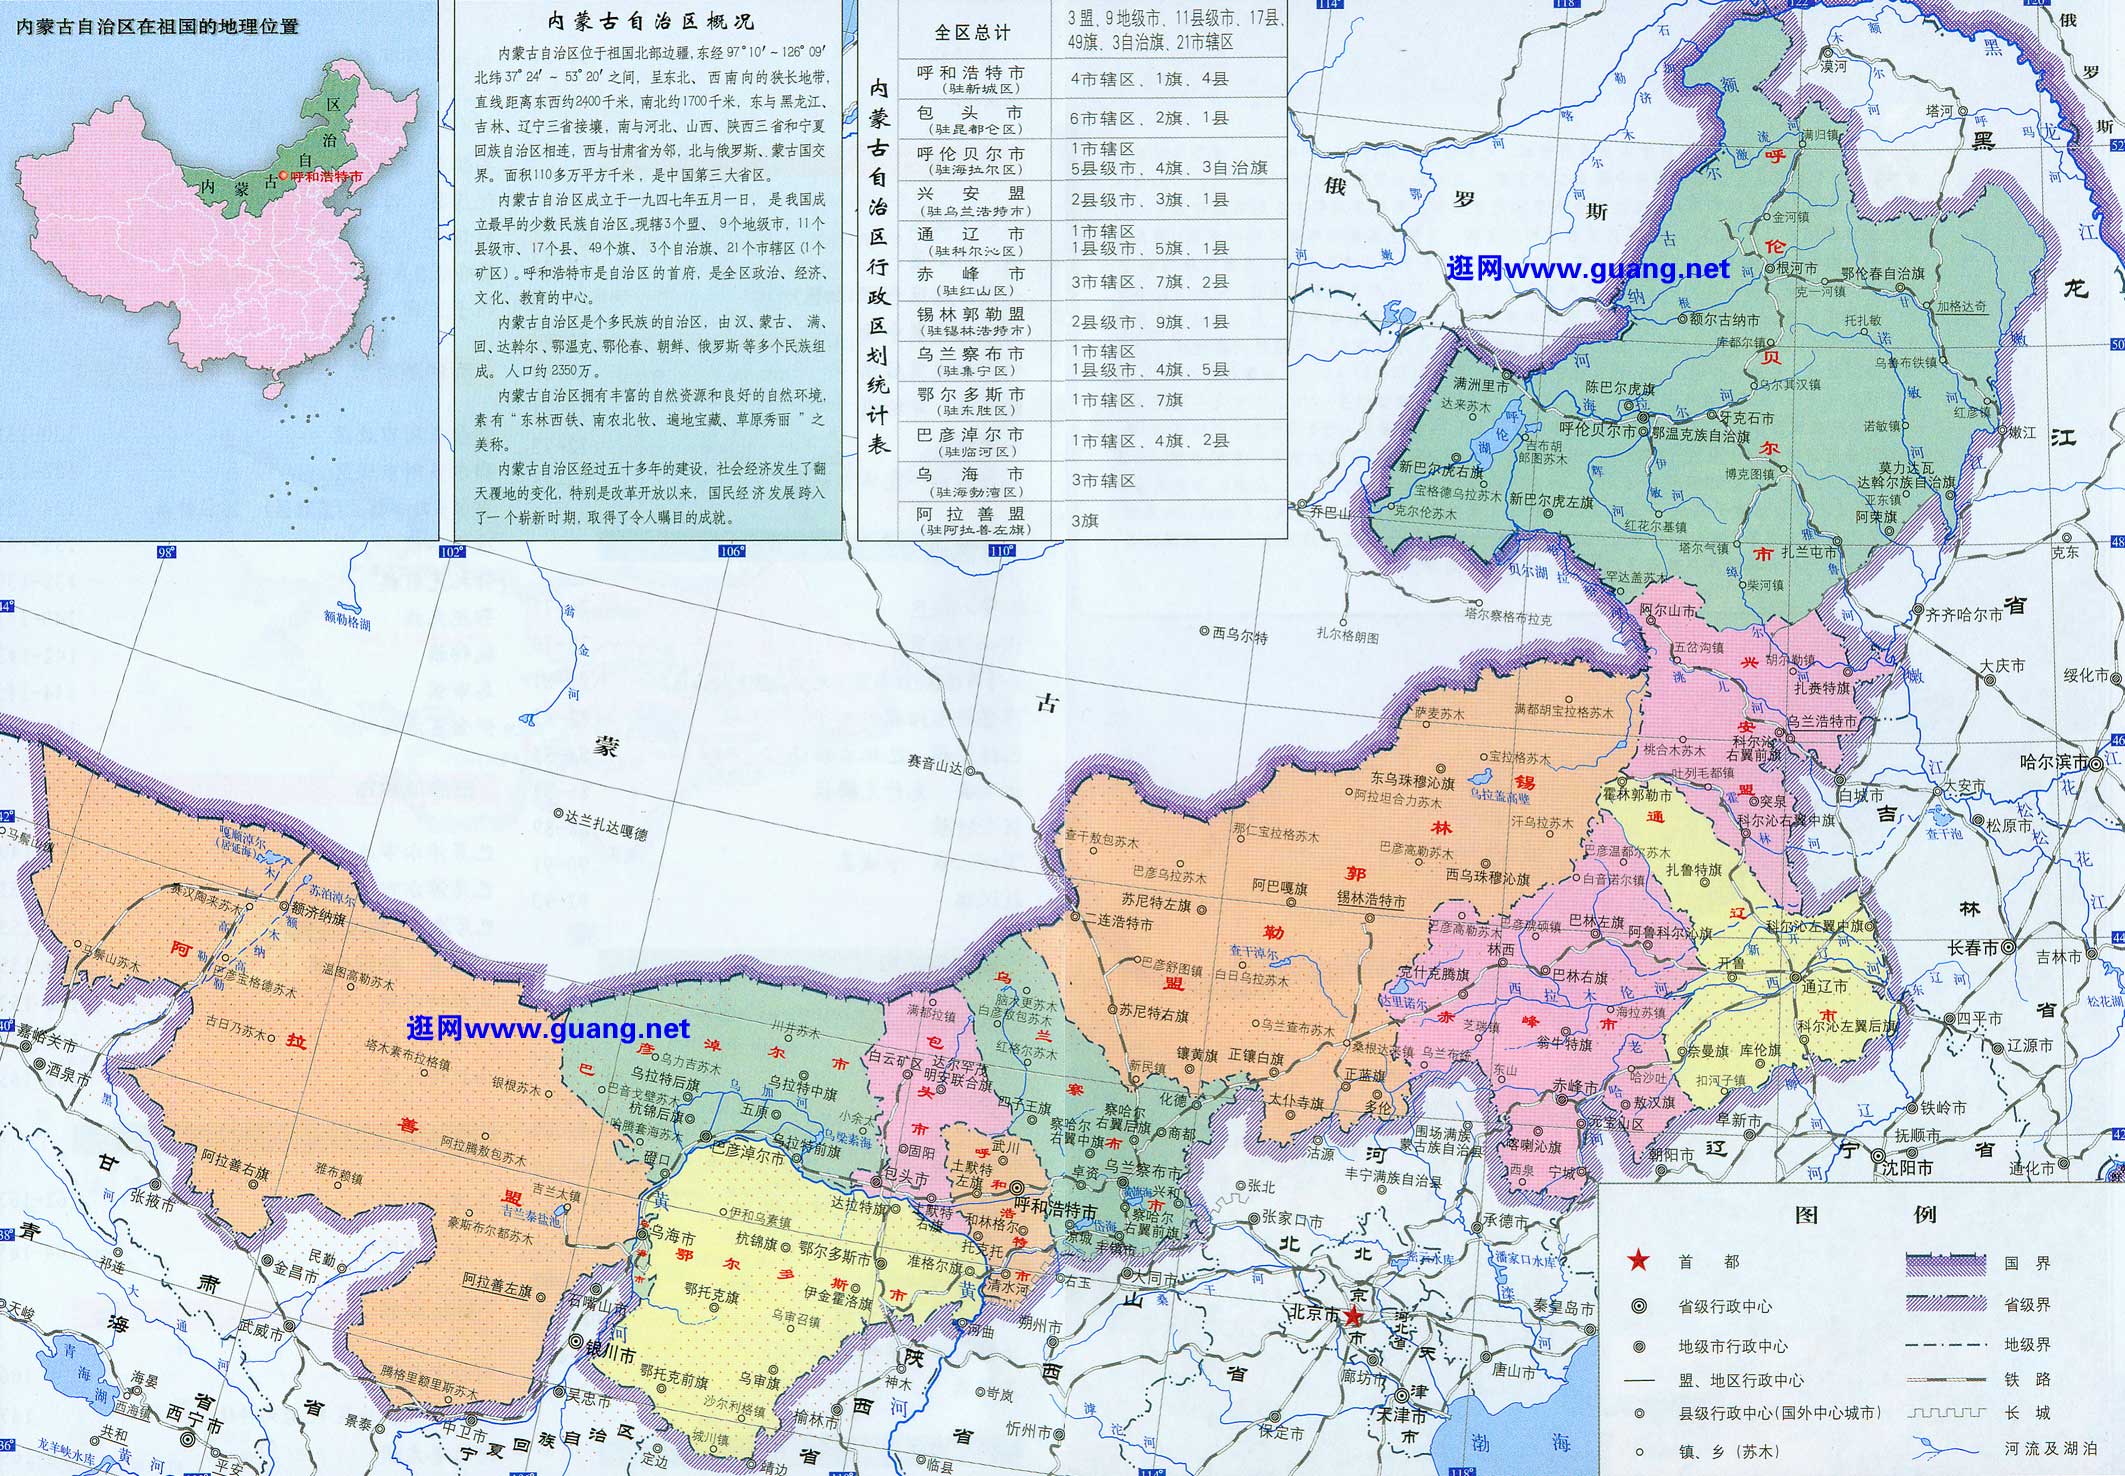 内蒙古地图.jpg